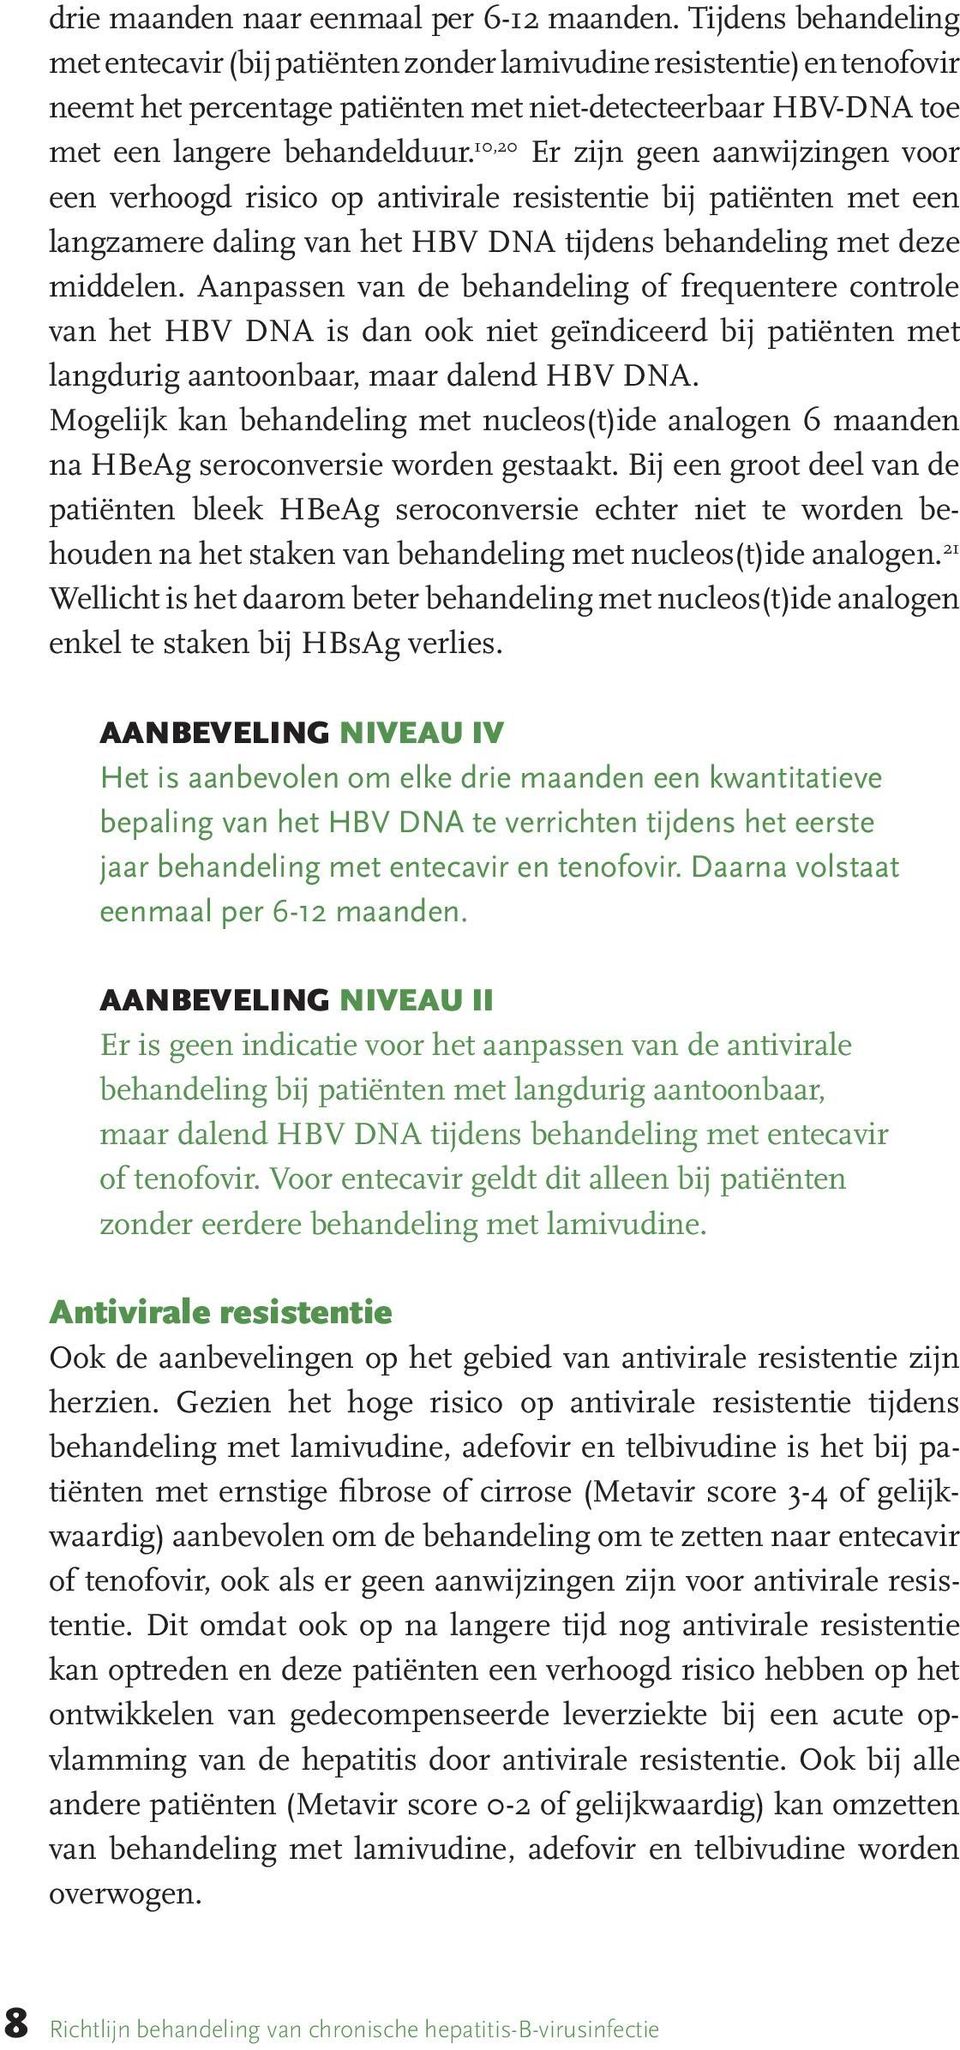 10,20 Er zijn geen aanwijzingen voor een verhoogd risico op antivirale resistentie bij patiënten met een langzamere daling van het HBV DNA tijdens behandeling met deze middelen.